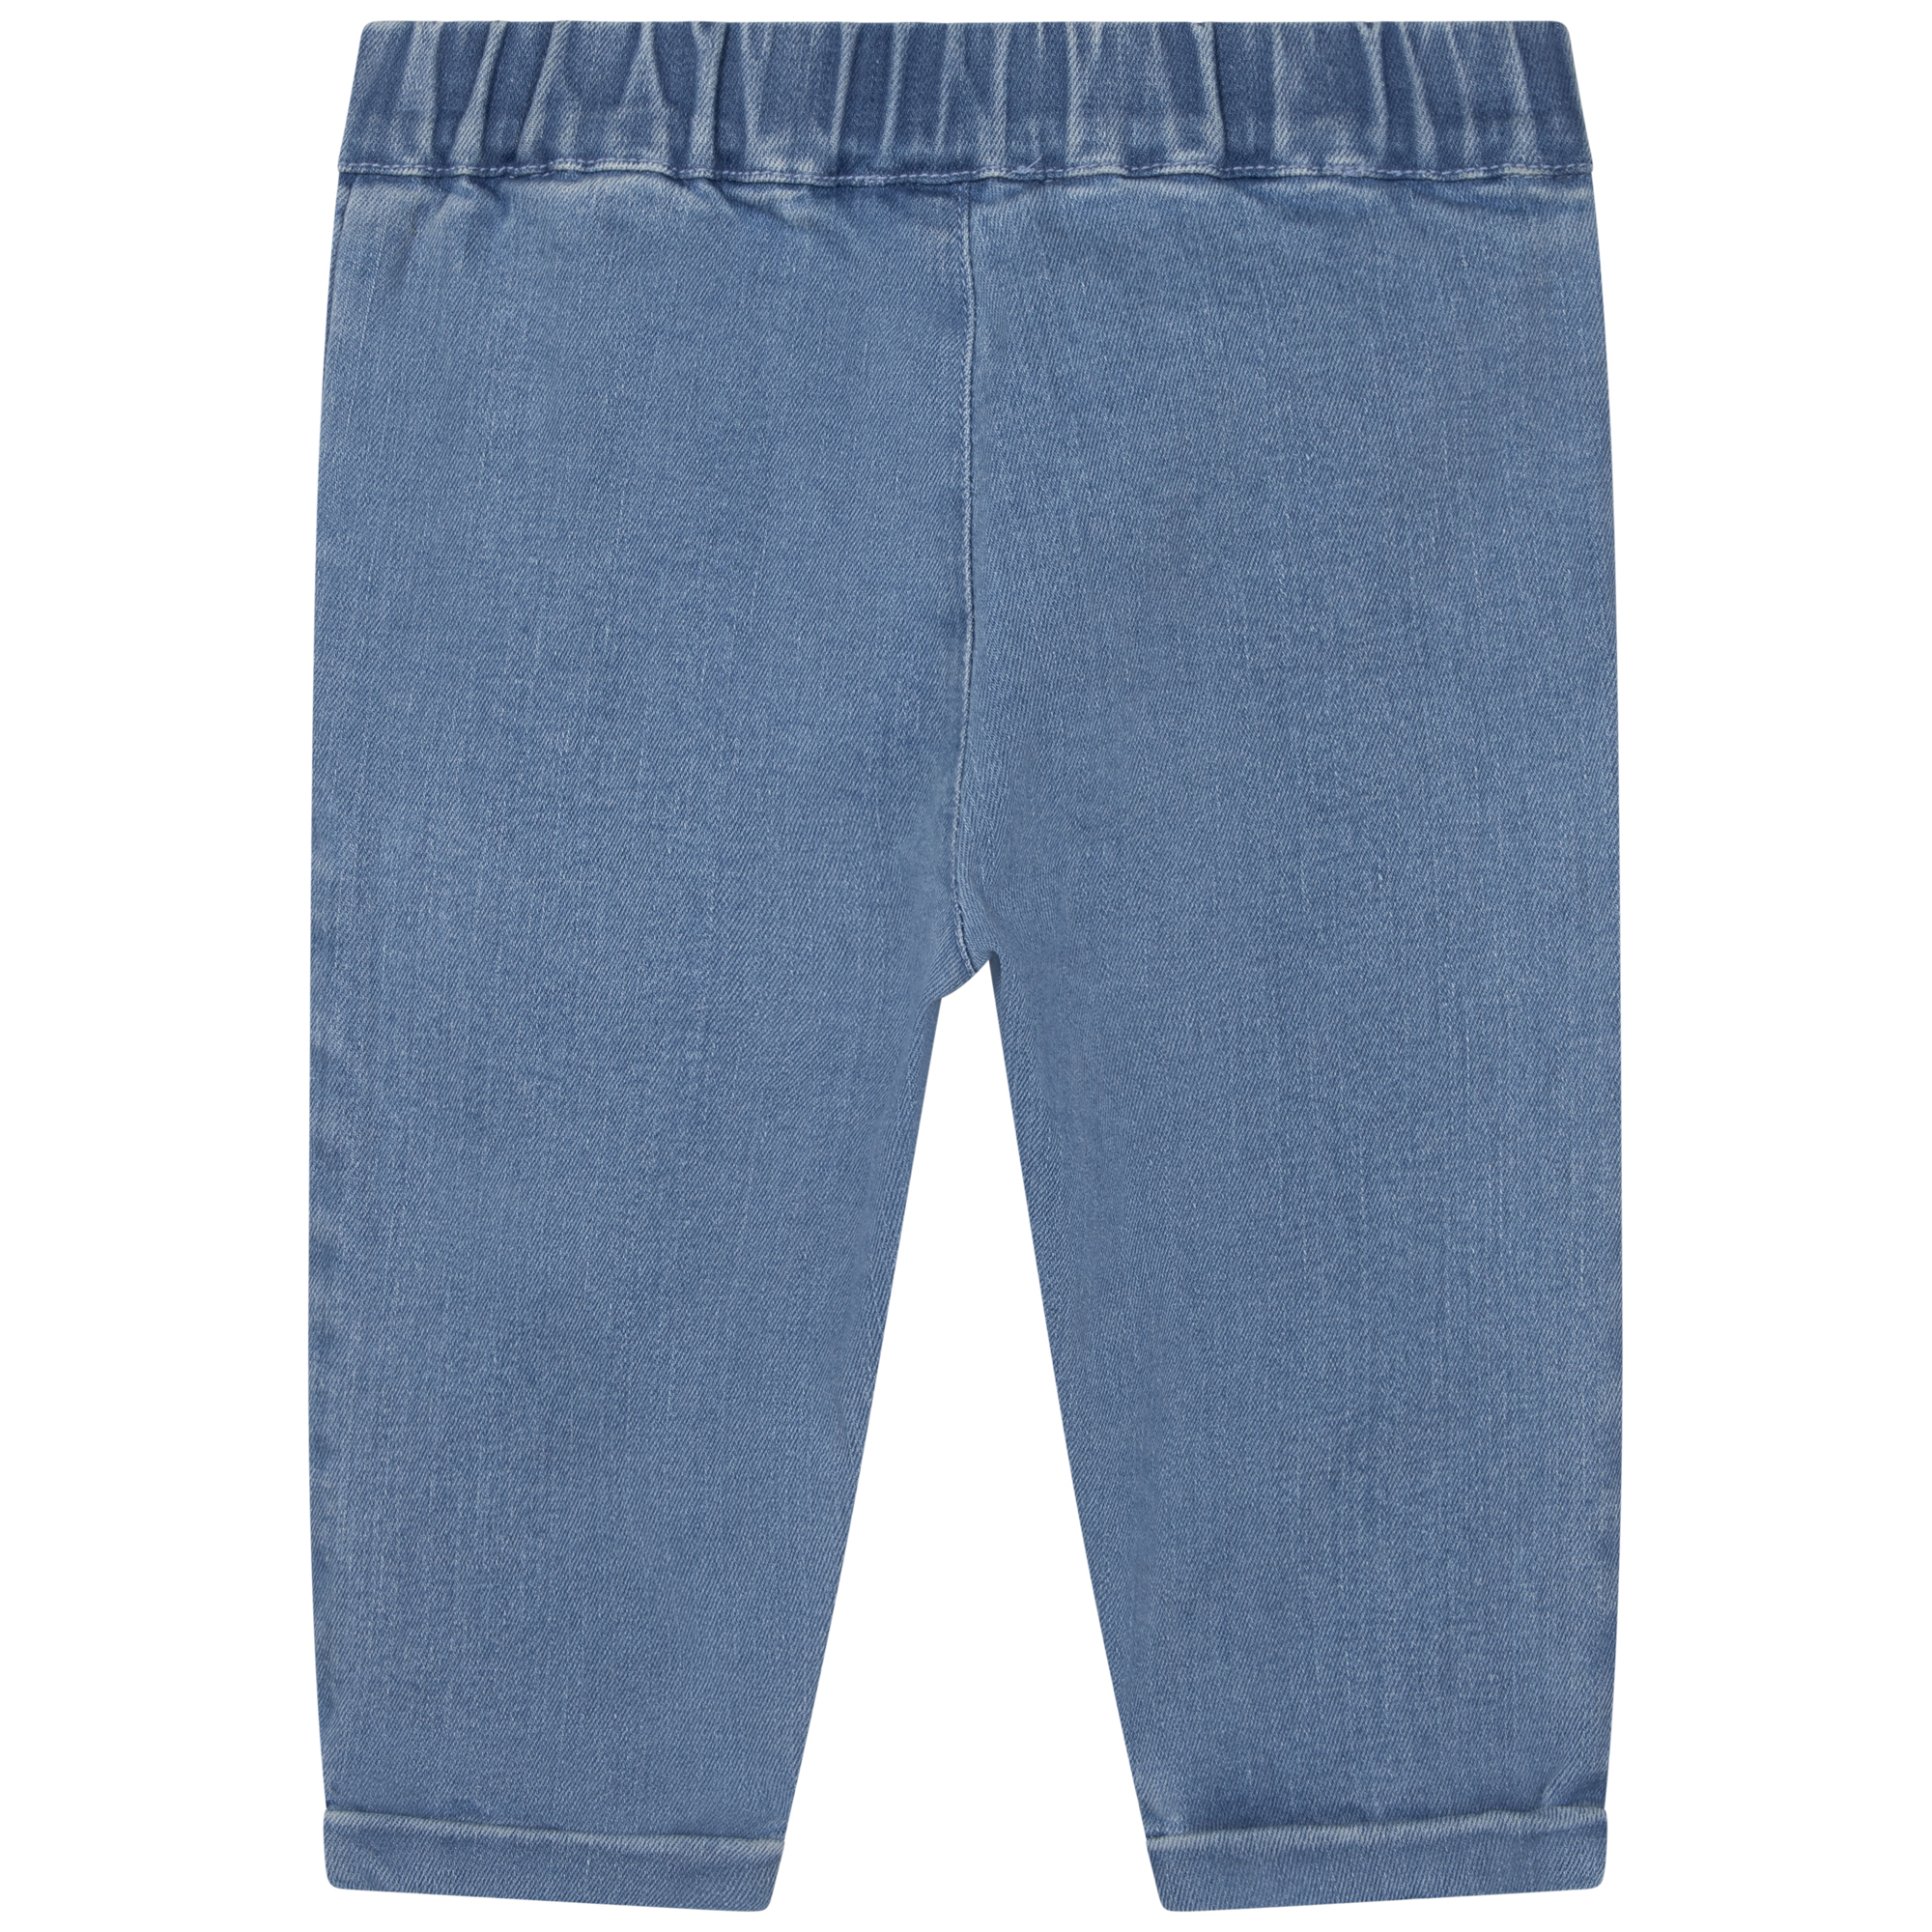 Wide-leg jeans CARREMENT BEAU for BOY